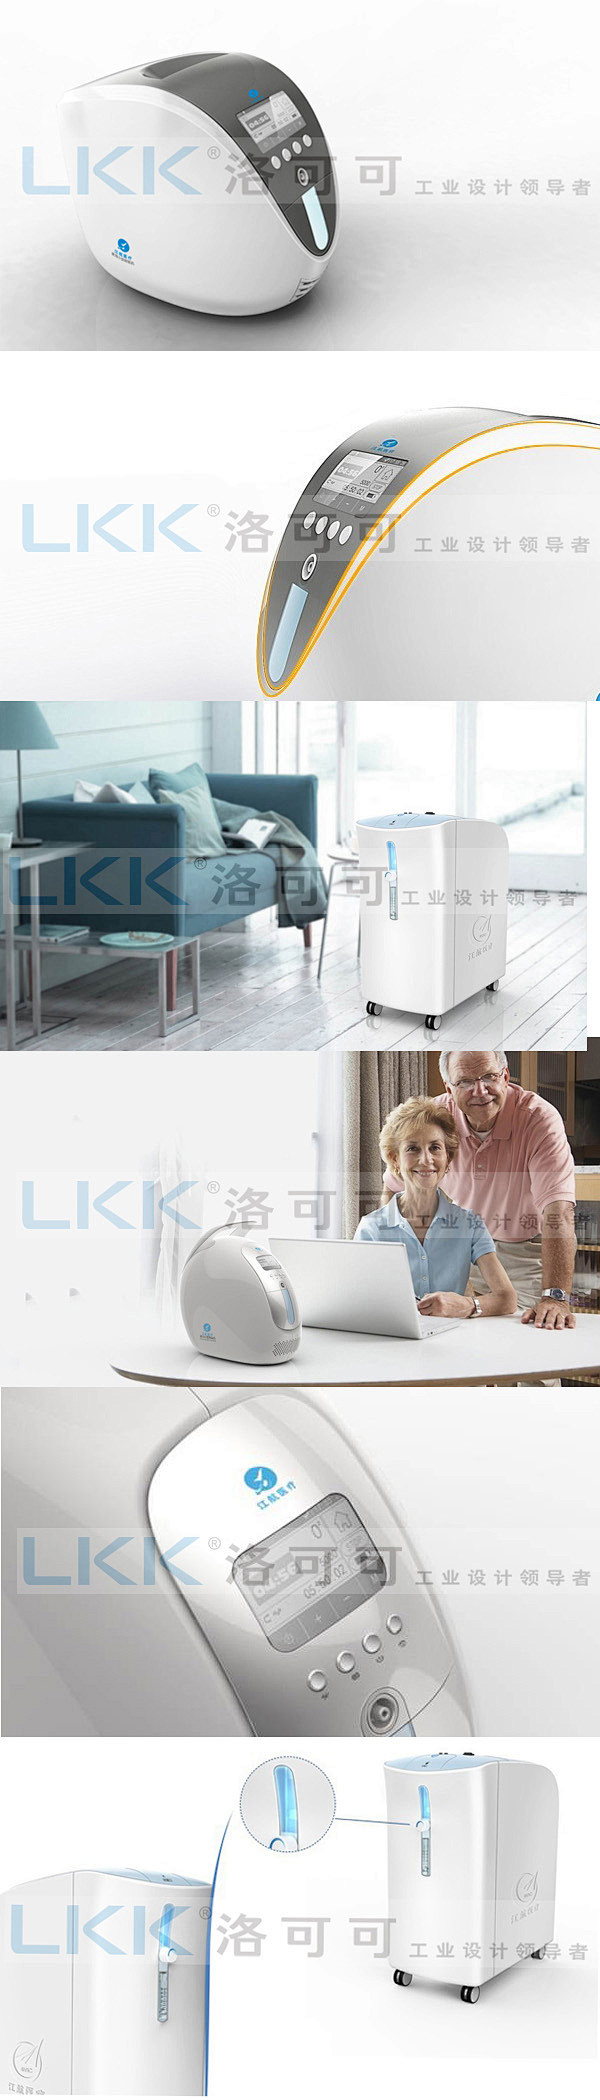 LKK洛可可为江航医疗设计的家用氧气机
...